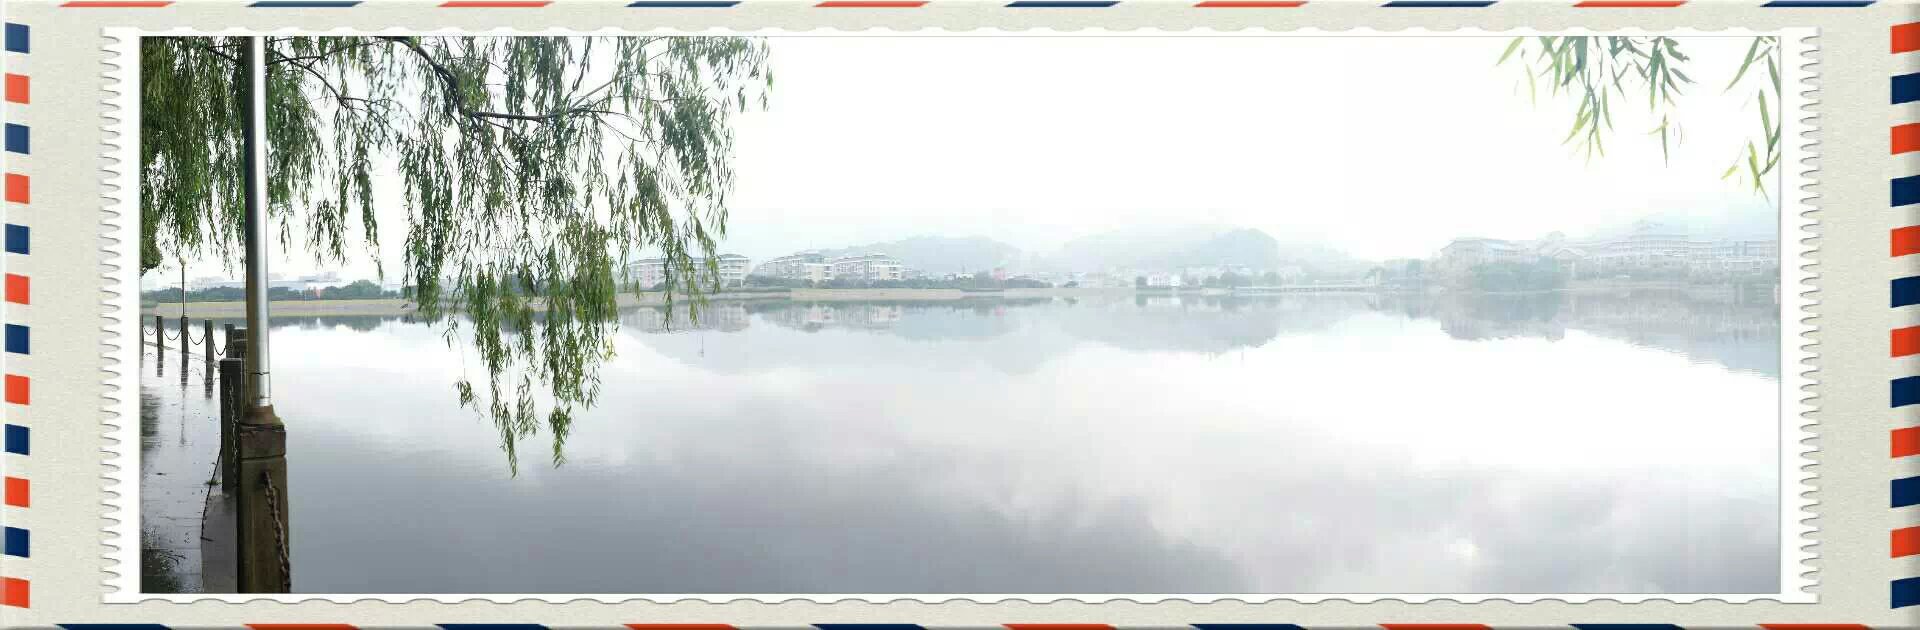 烟雨东谷湖1.jpg